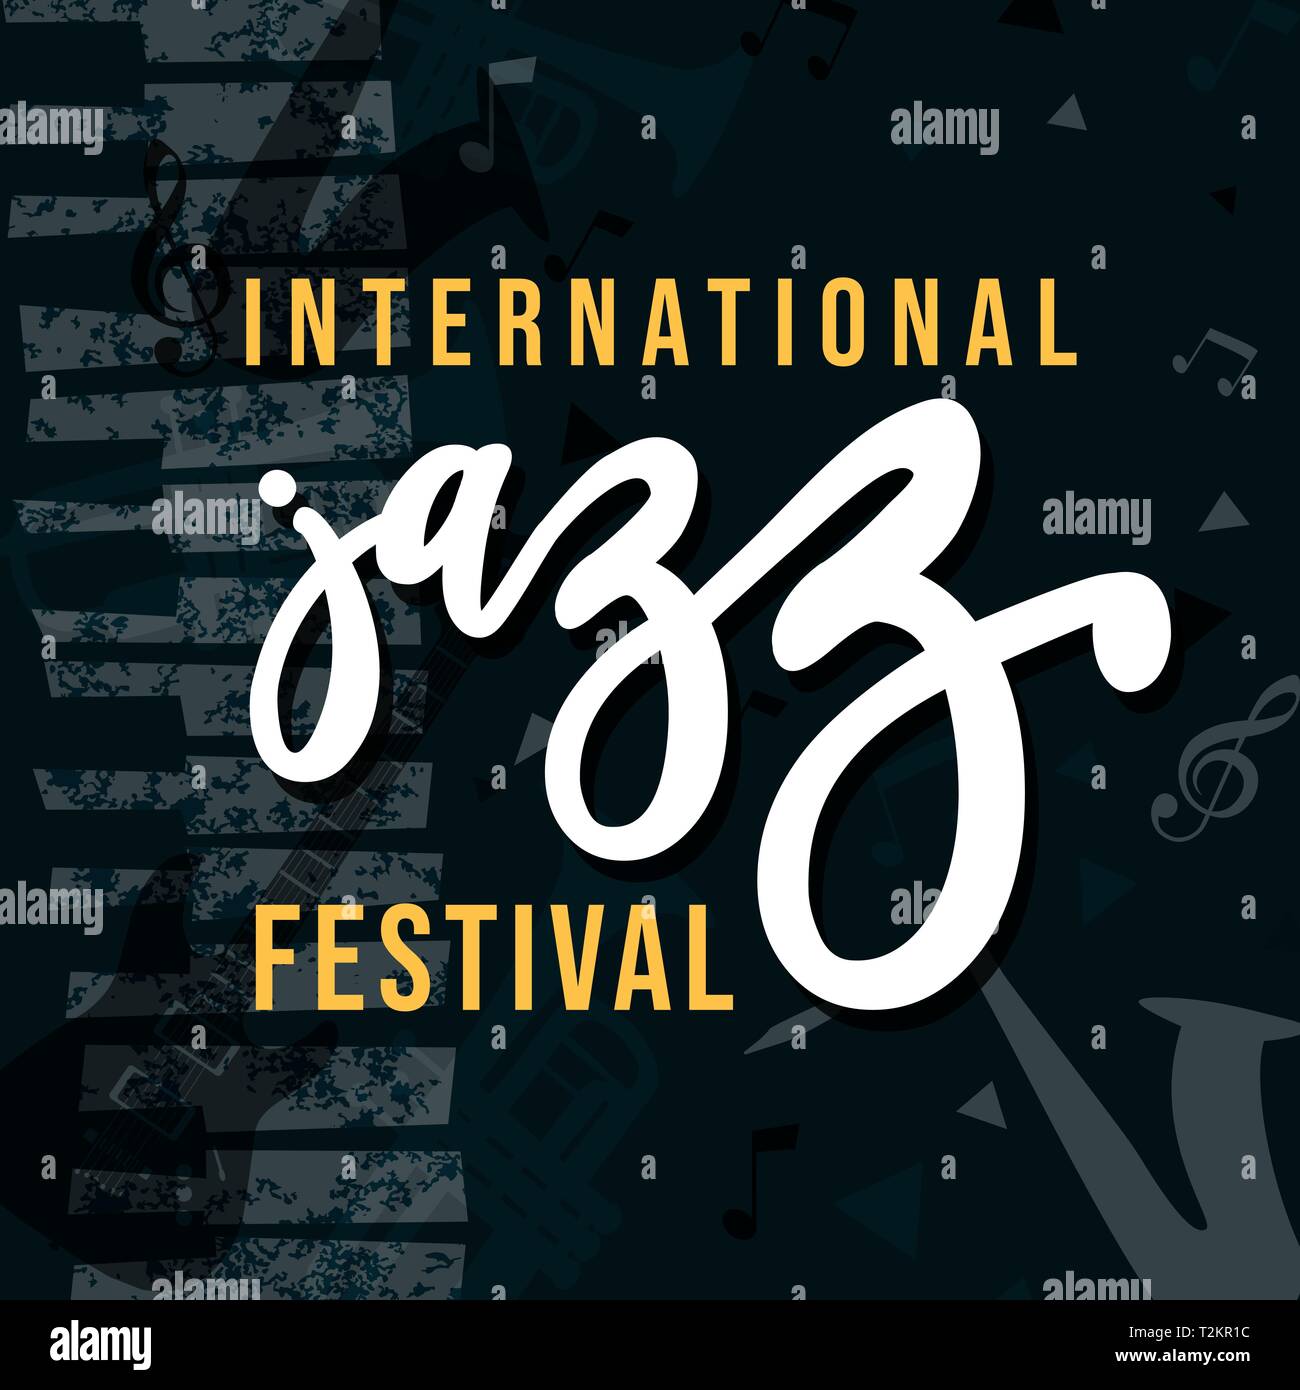 International Jazz Festival Plakat Illustration für besondere Musik Veranstaltung. Grunge Texturen Hintergrund mit Piano und Noten. Stock Vektor